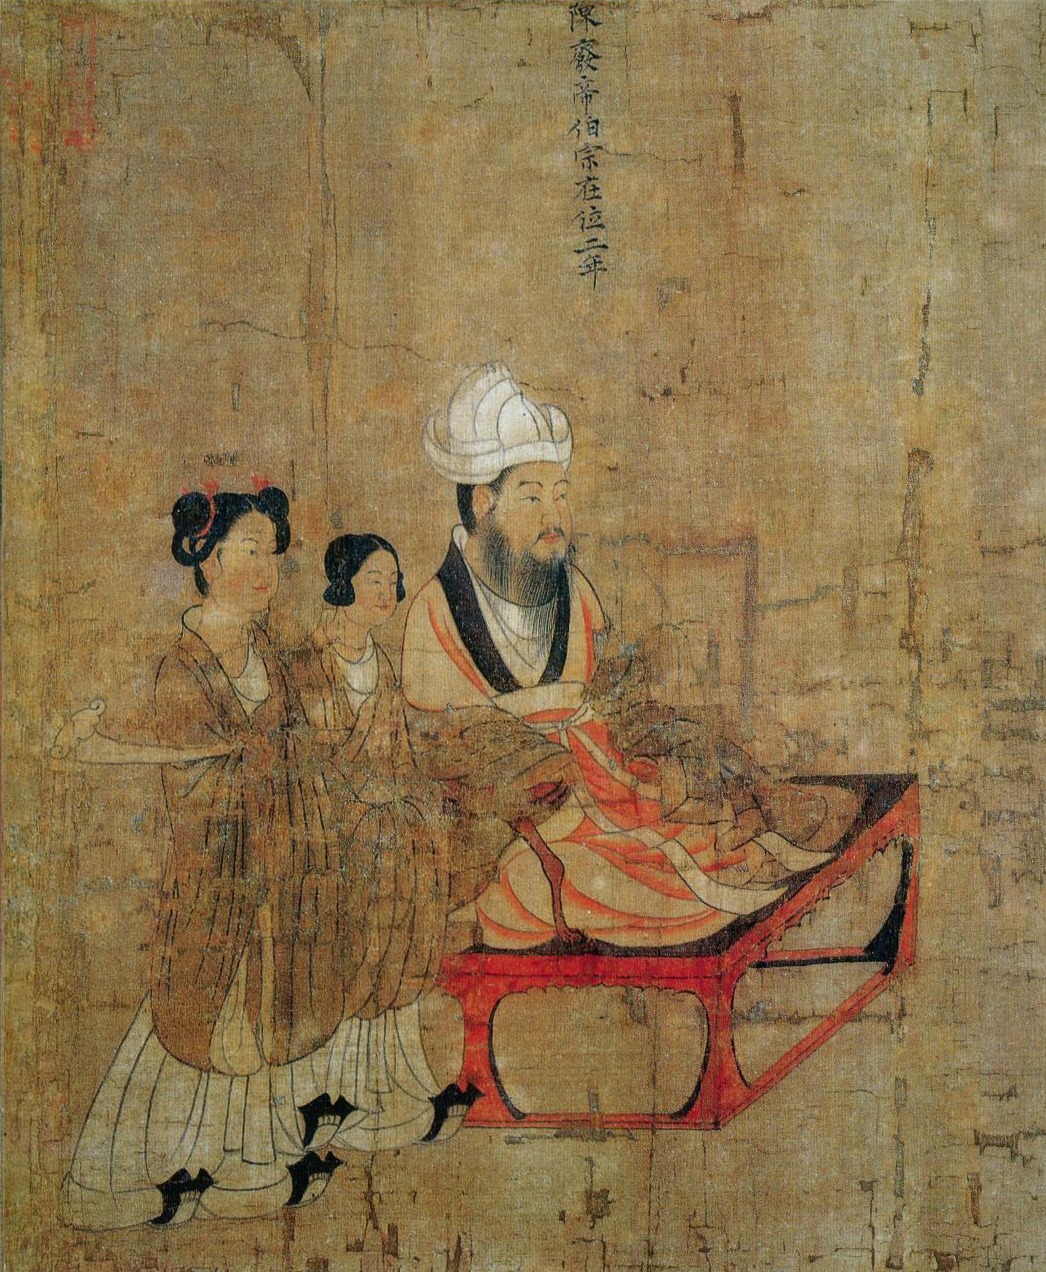 Emperor Fei of Chen